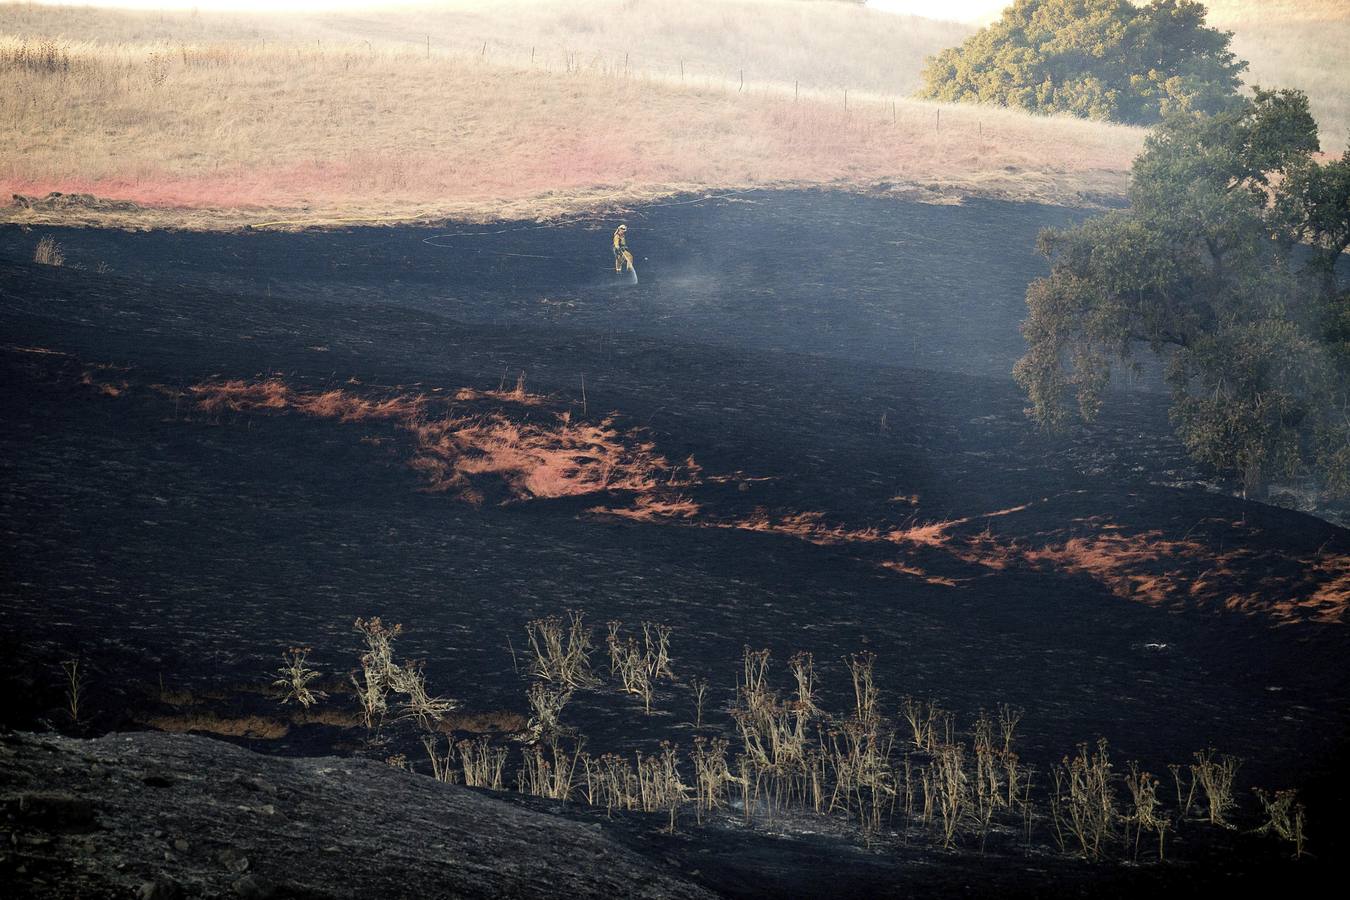 Incendio forestal en California